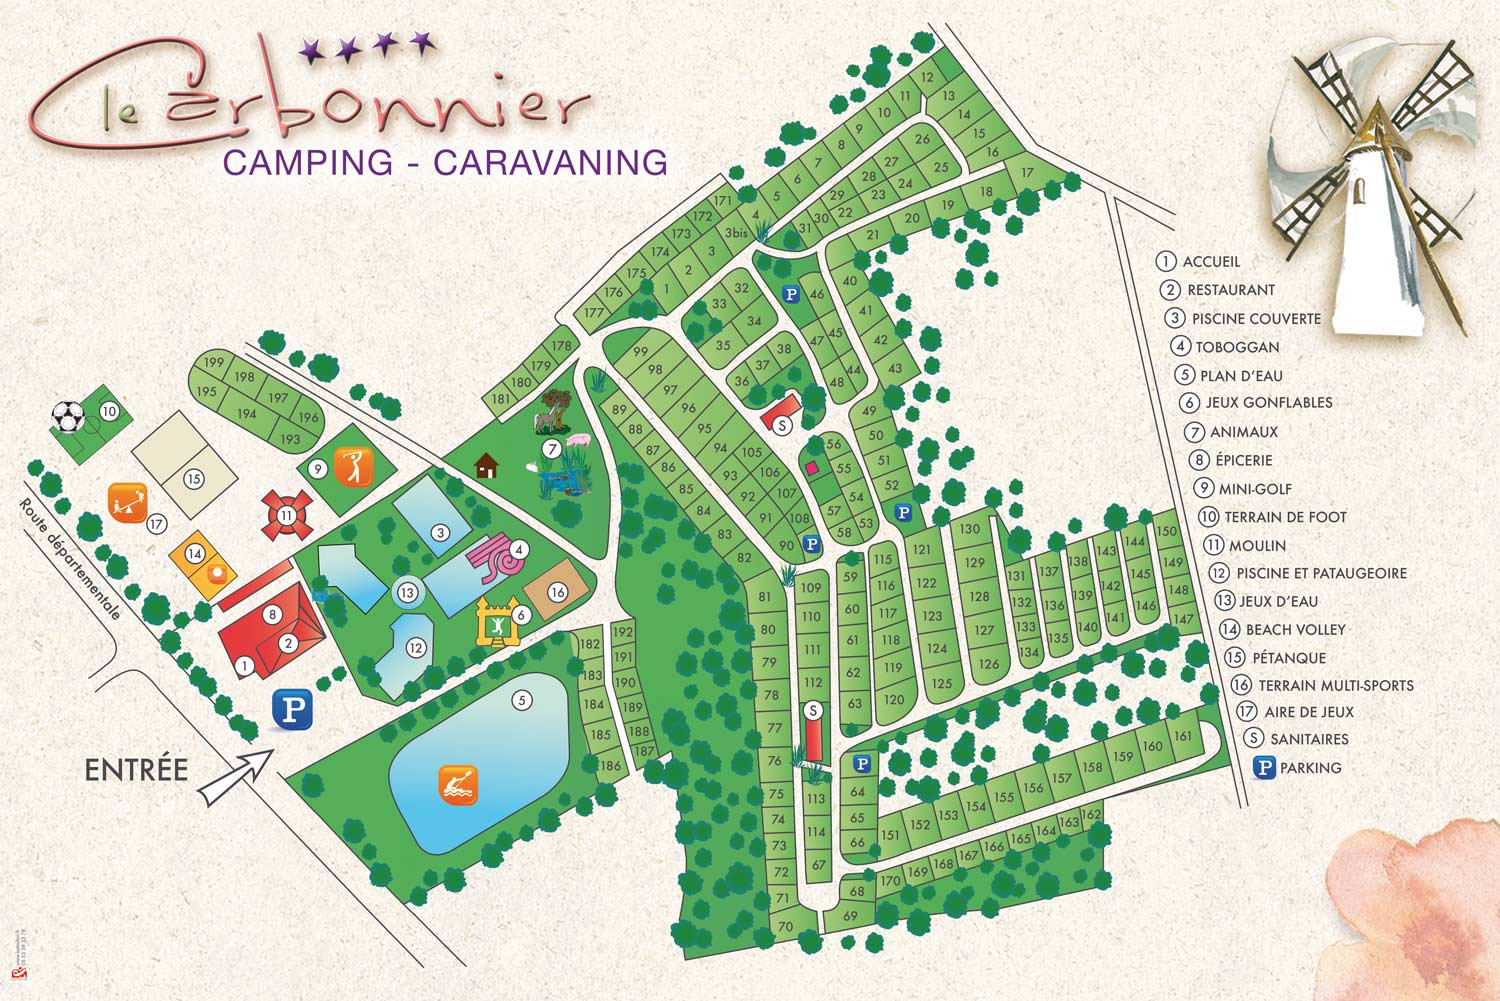 Campsite map Le Carbonnier